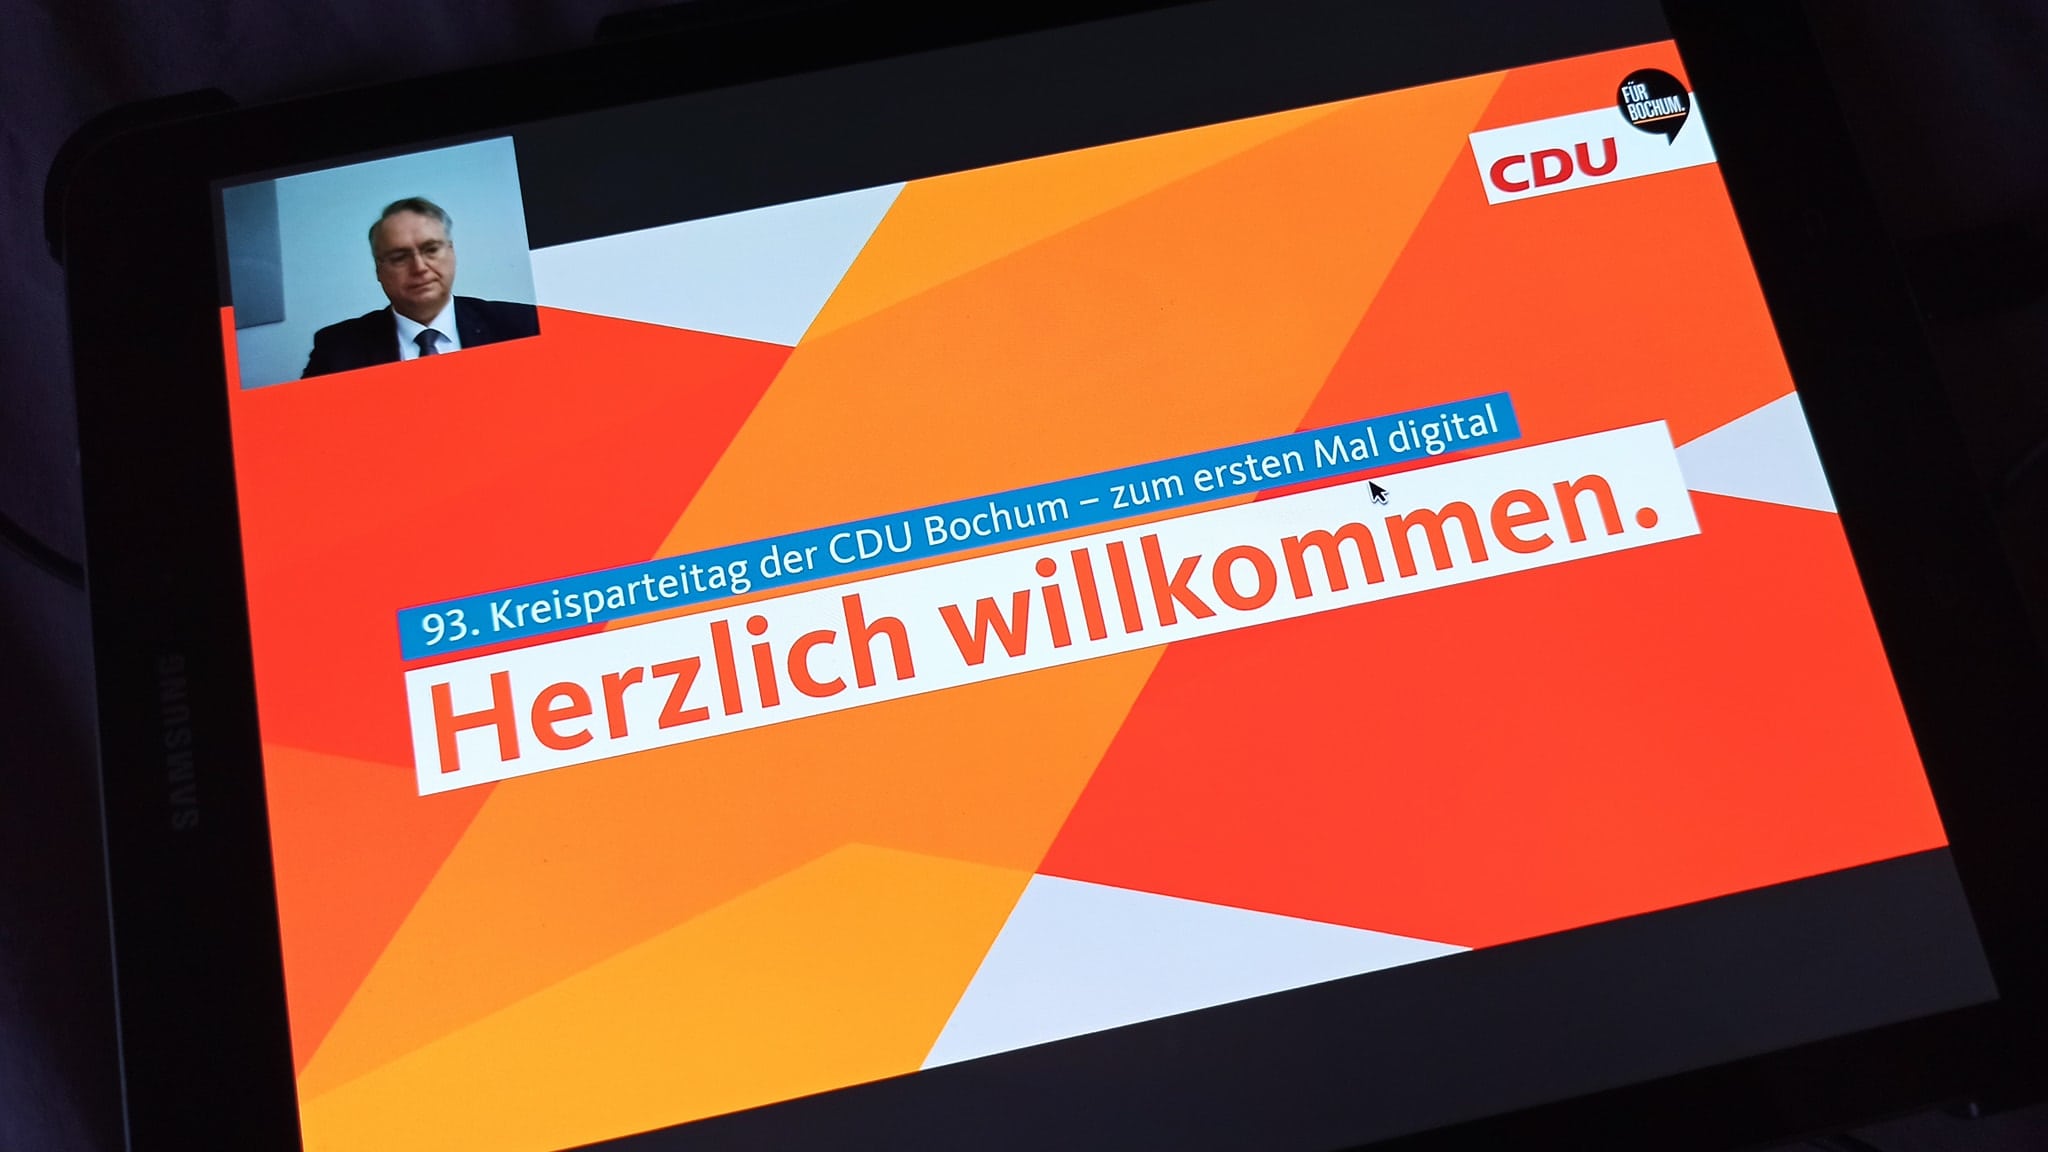 93. Kreisparteitag der CDU Bochum: Herzlich willkommen.